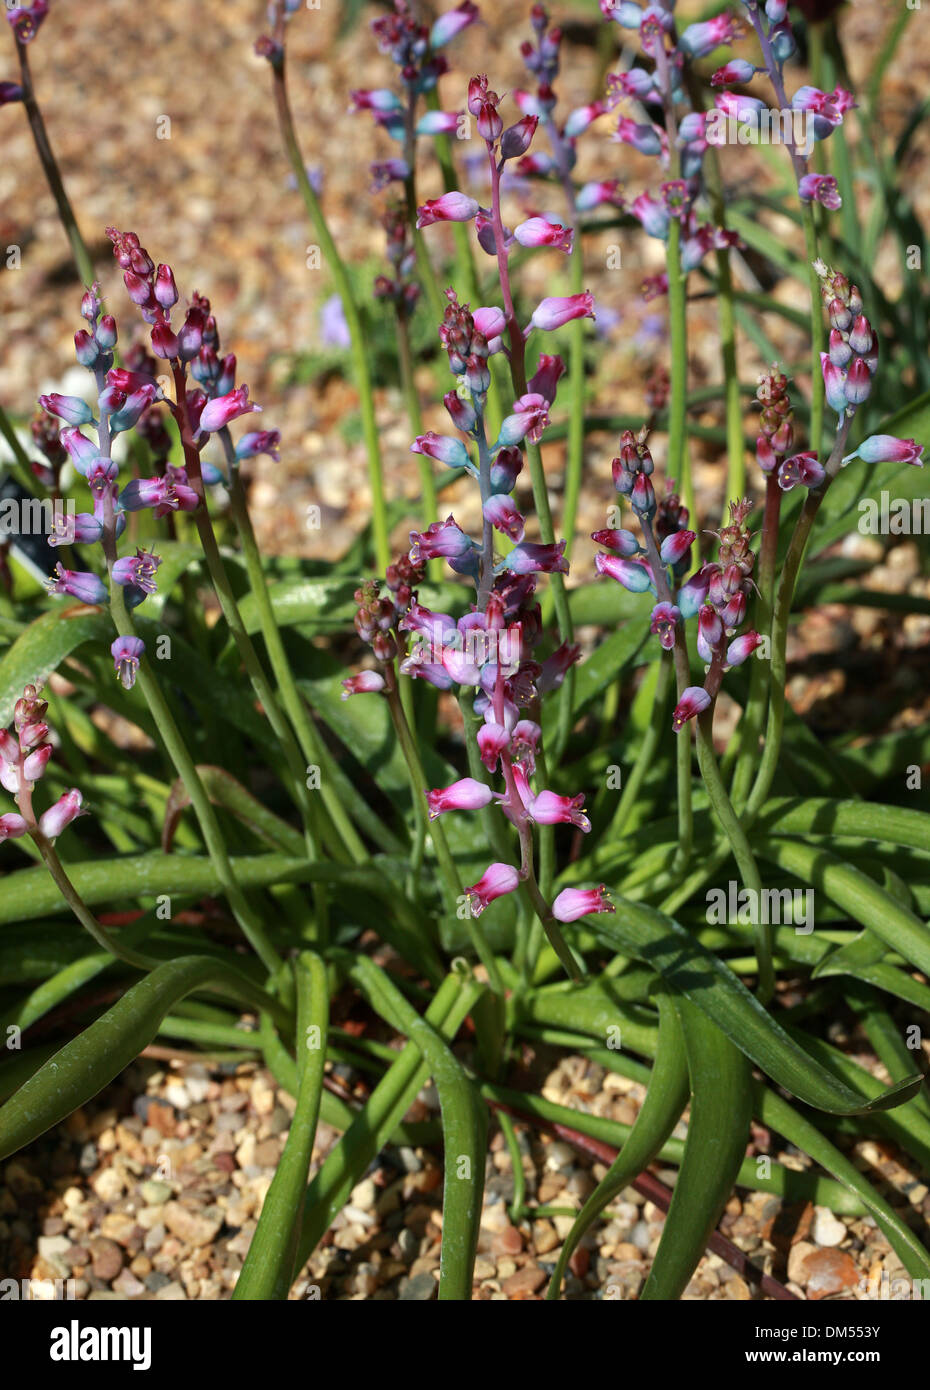 Lachenalia rosea, Hyacinthaceae, Province du Cap, Afrique du Sud Banque D'Images